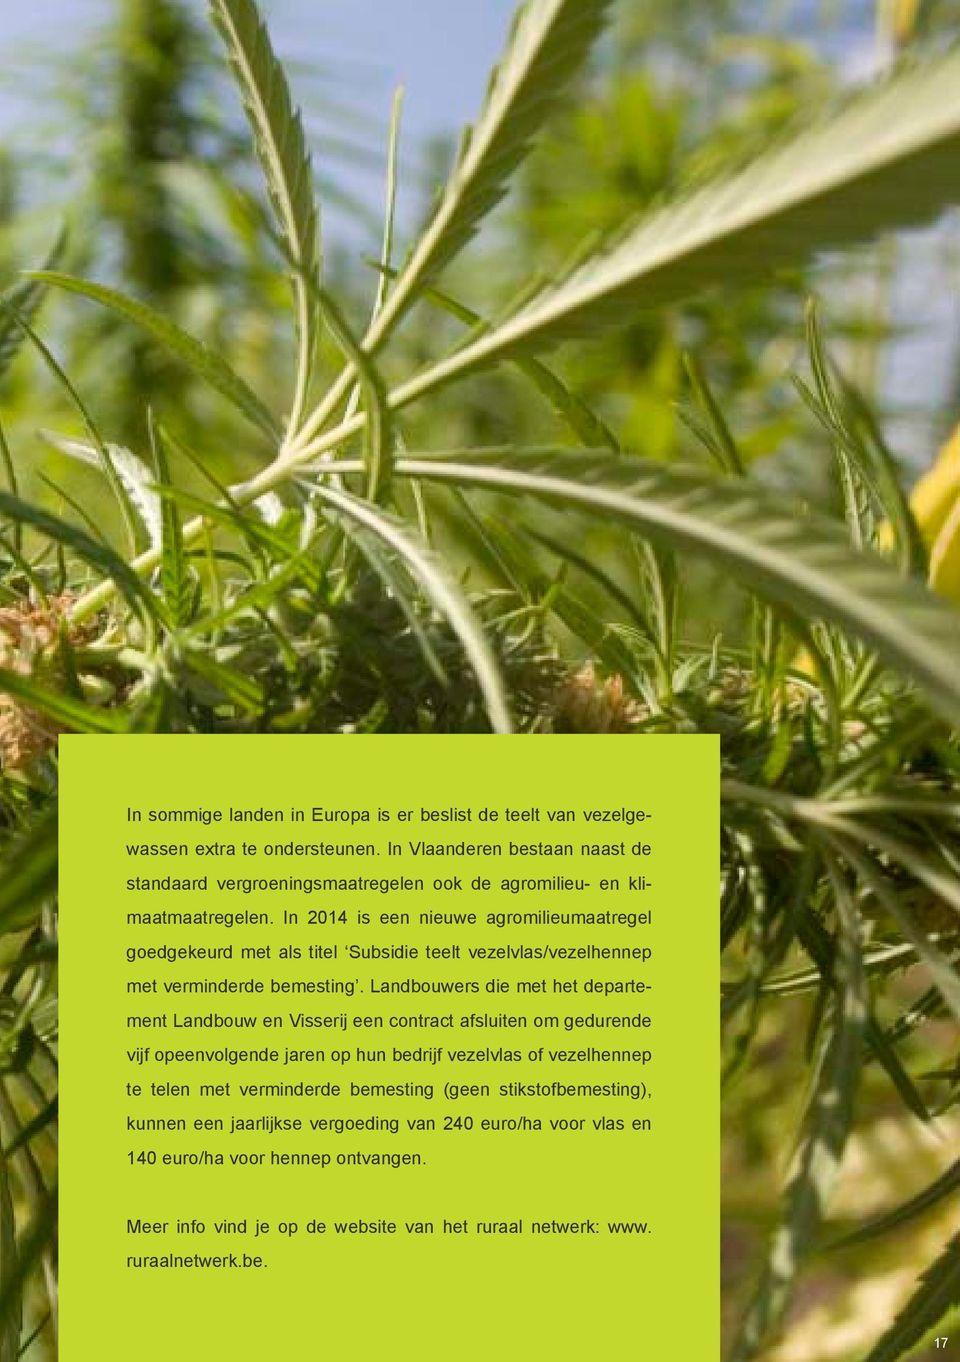 In 2014 is een nieuwe agromilieumaatregel goedgekeurd met als titel Subsidie teelt vezelvlas/vezelhennep met verminderde bemesting.